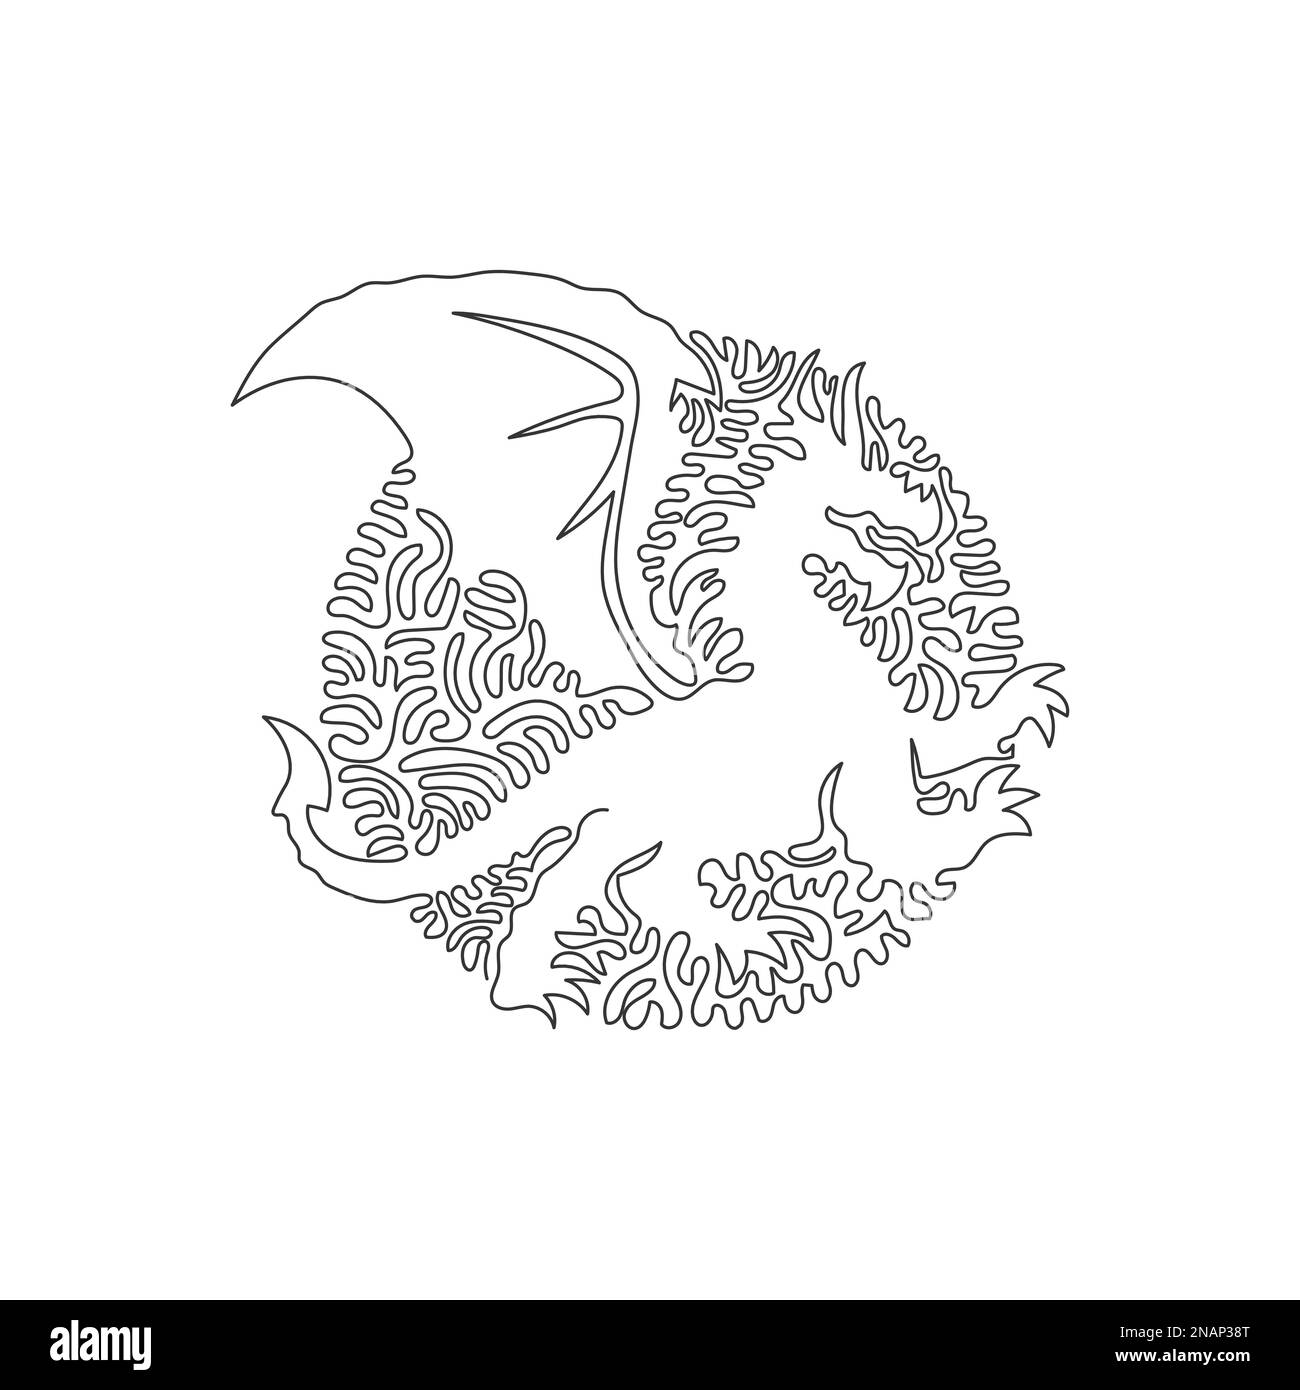 Dessin continu d'une ligne de courbe d'énormes ailes de dragon, art abstrait en cercle. Illustration d'un vecteur de trait modifiable d'une seule ligne représentant un dragon redoutable Illustration de Vecteur